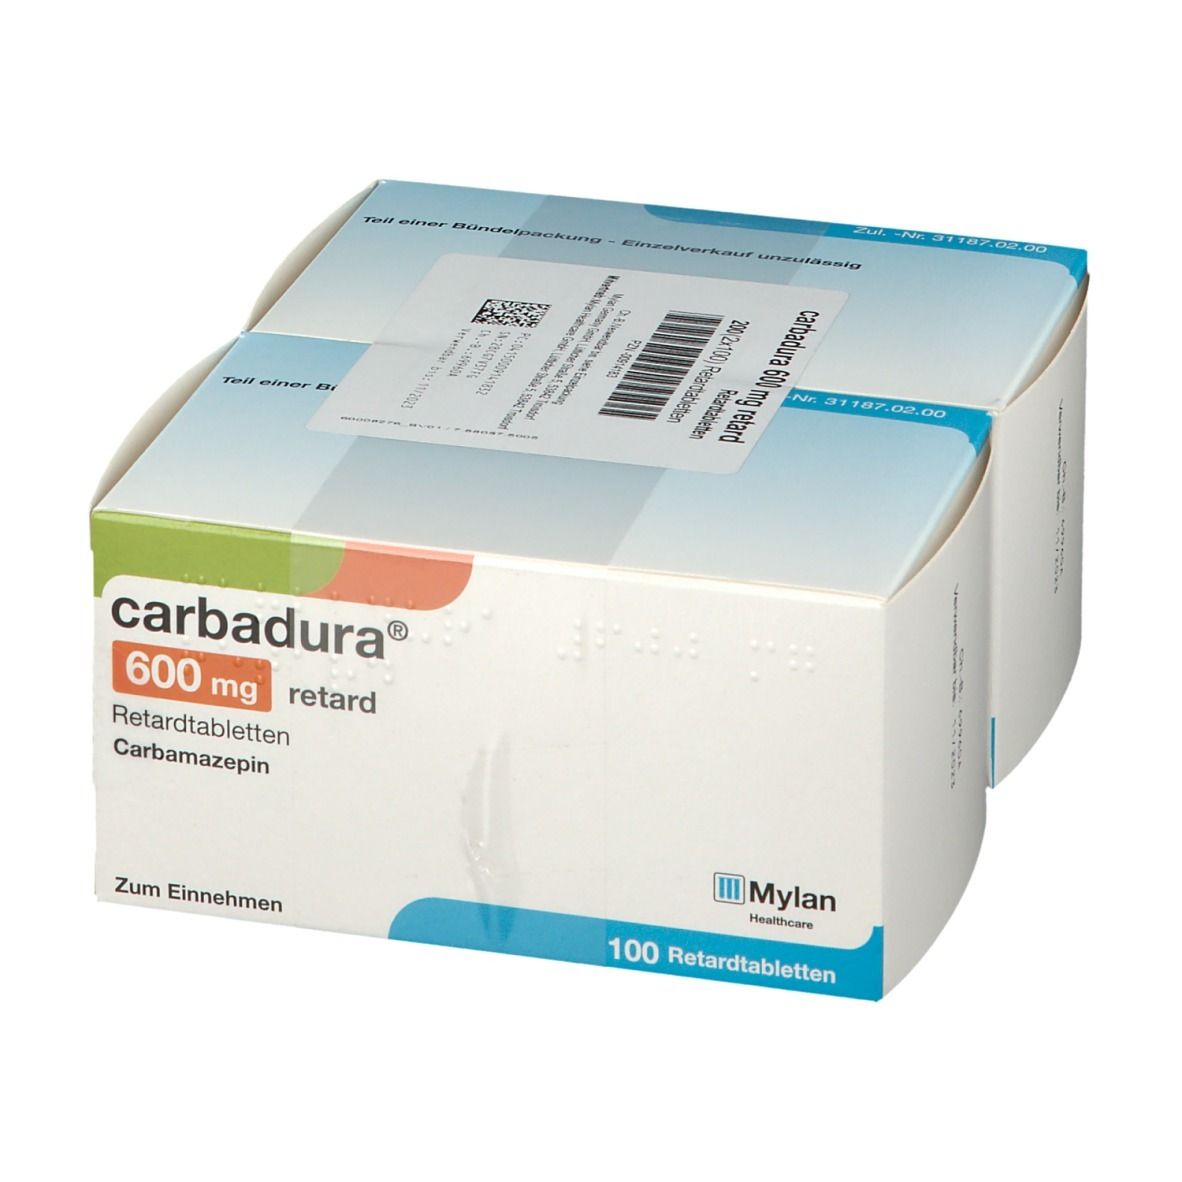 Carbadura® 600 mg retard